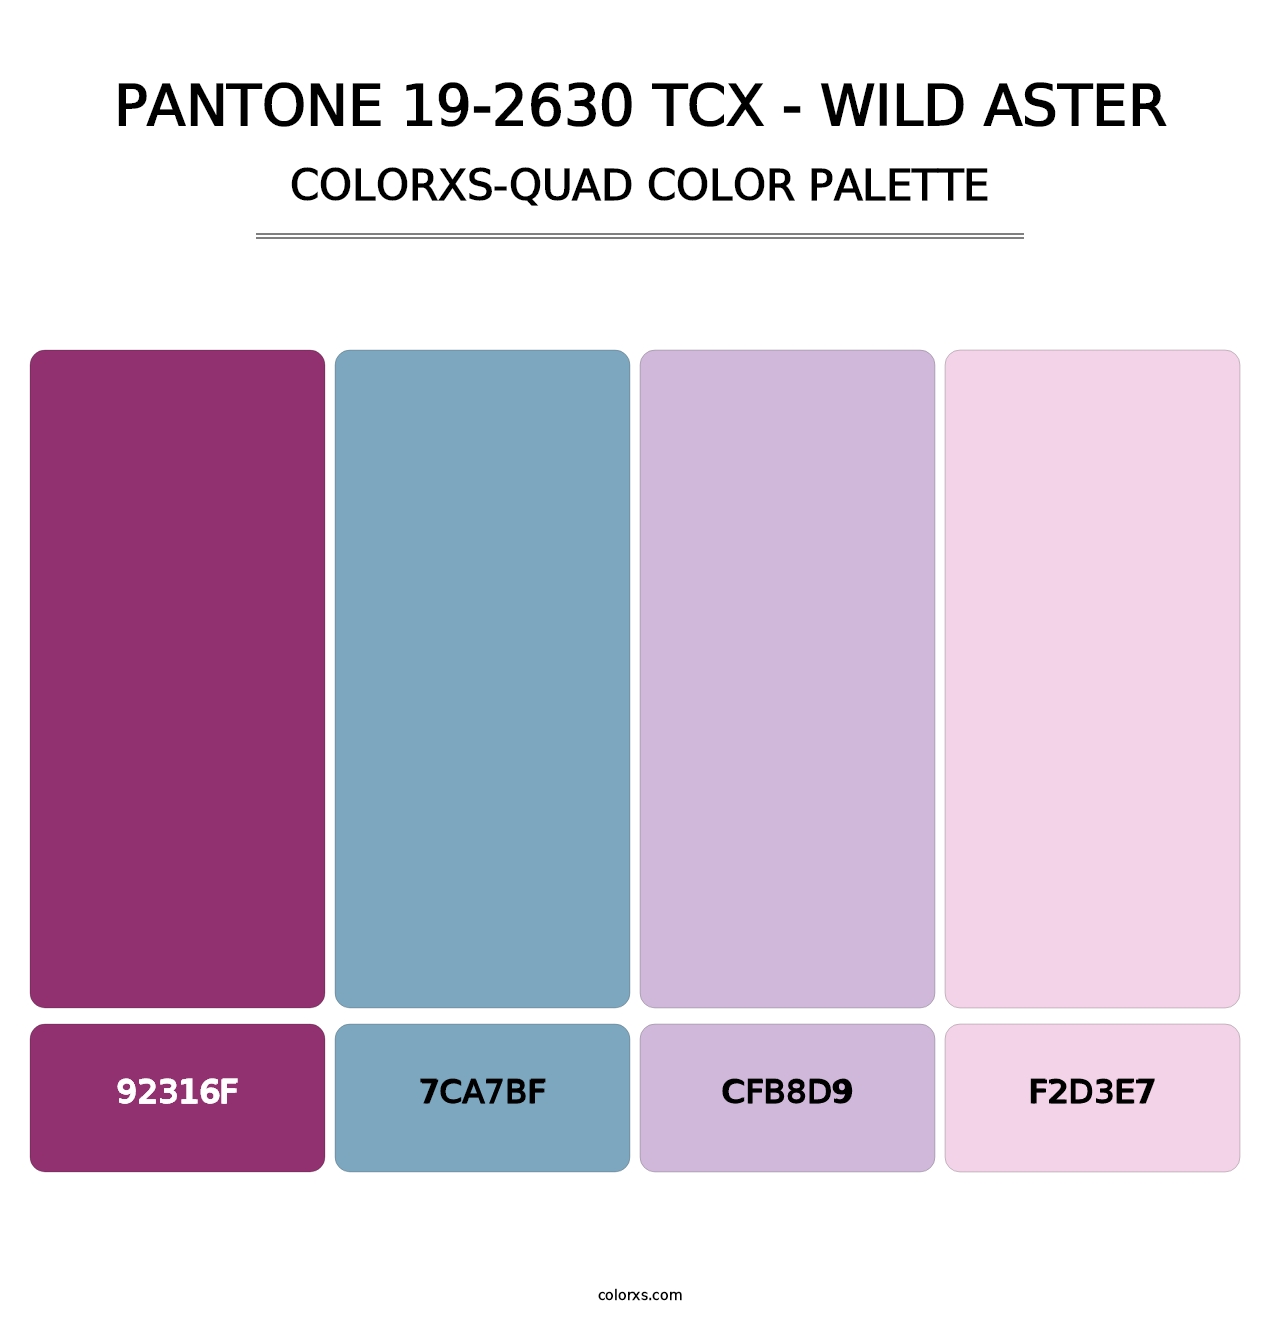 PANTONE 19-2630 TCX - Wild Aster - Colorxs Quad Palette